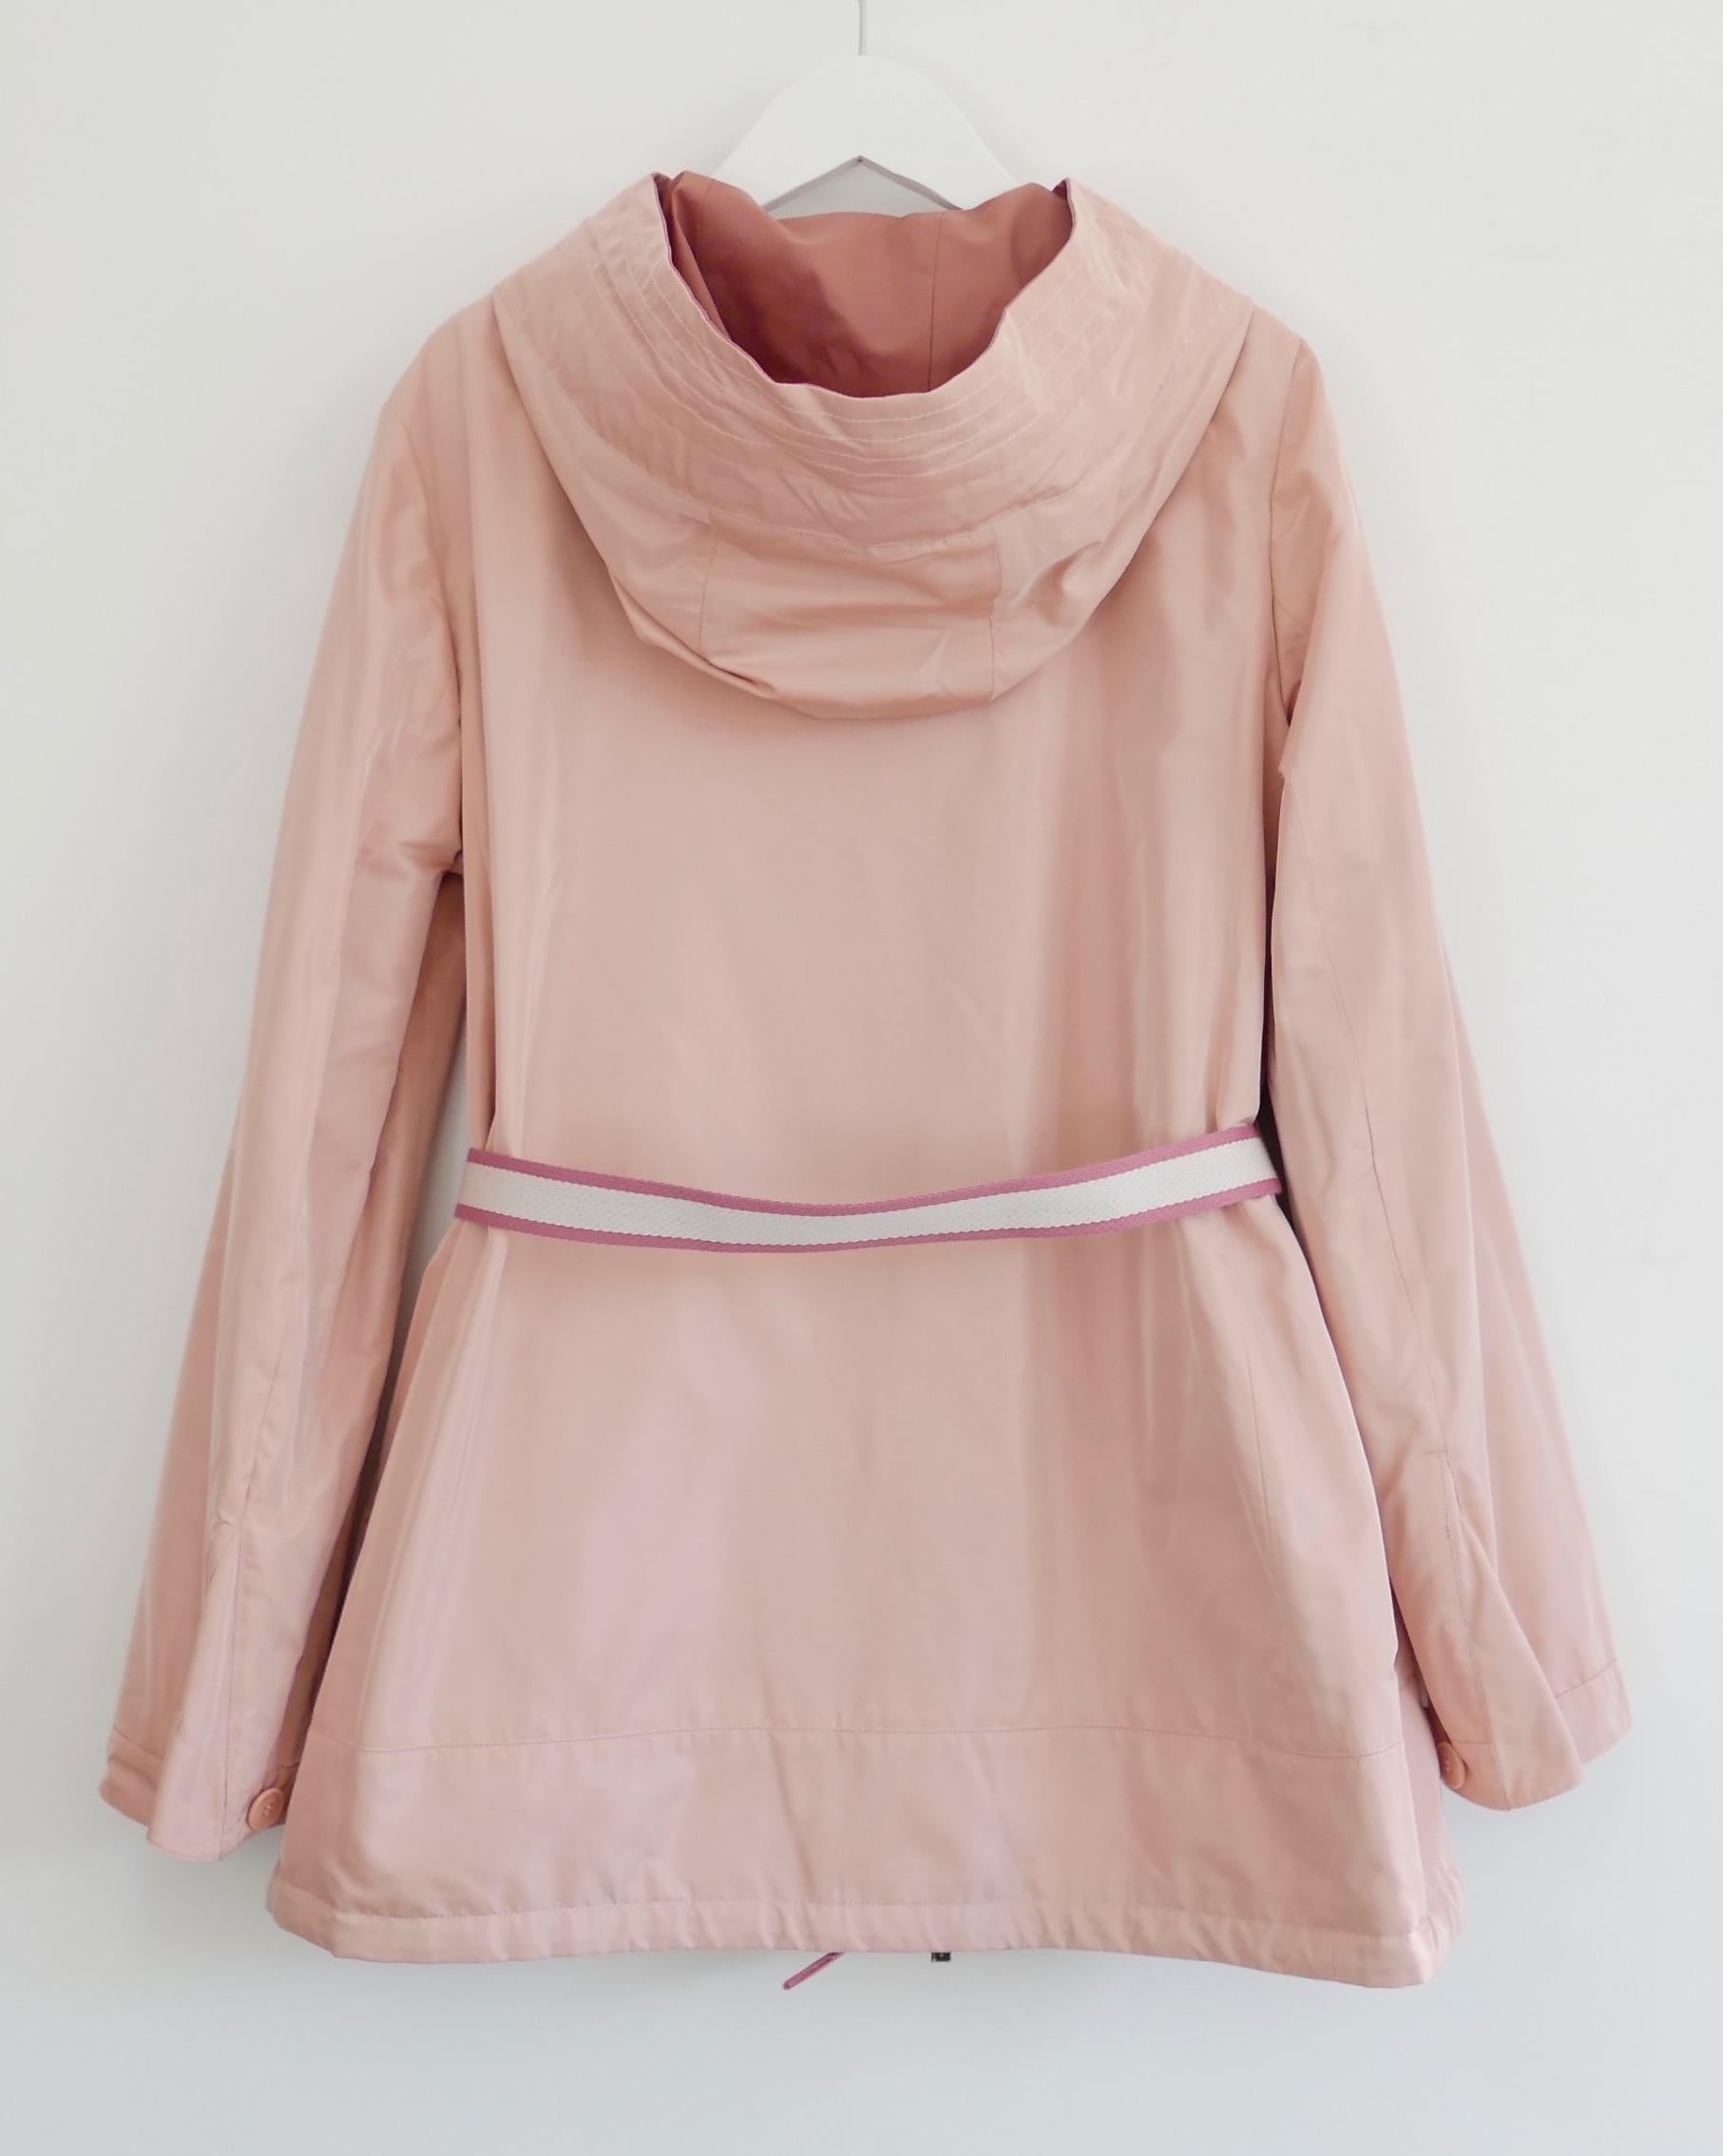 Magnifique veste anorak réversible Ashton de Loro Piana dans le coloris Antique Pink/Light Rose. Acheté pour 3970 $ et neuf avec étiquettes/boutons de rechange. Entièrement réversible, il est composé d'un polyester/soie doux d'un côté et d'un